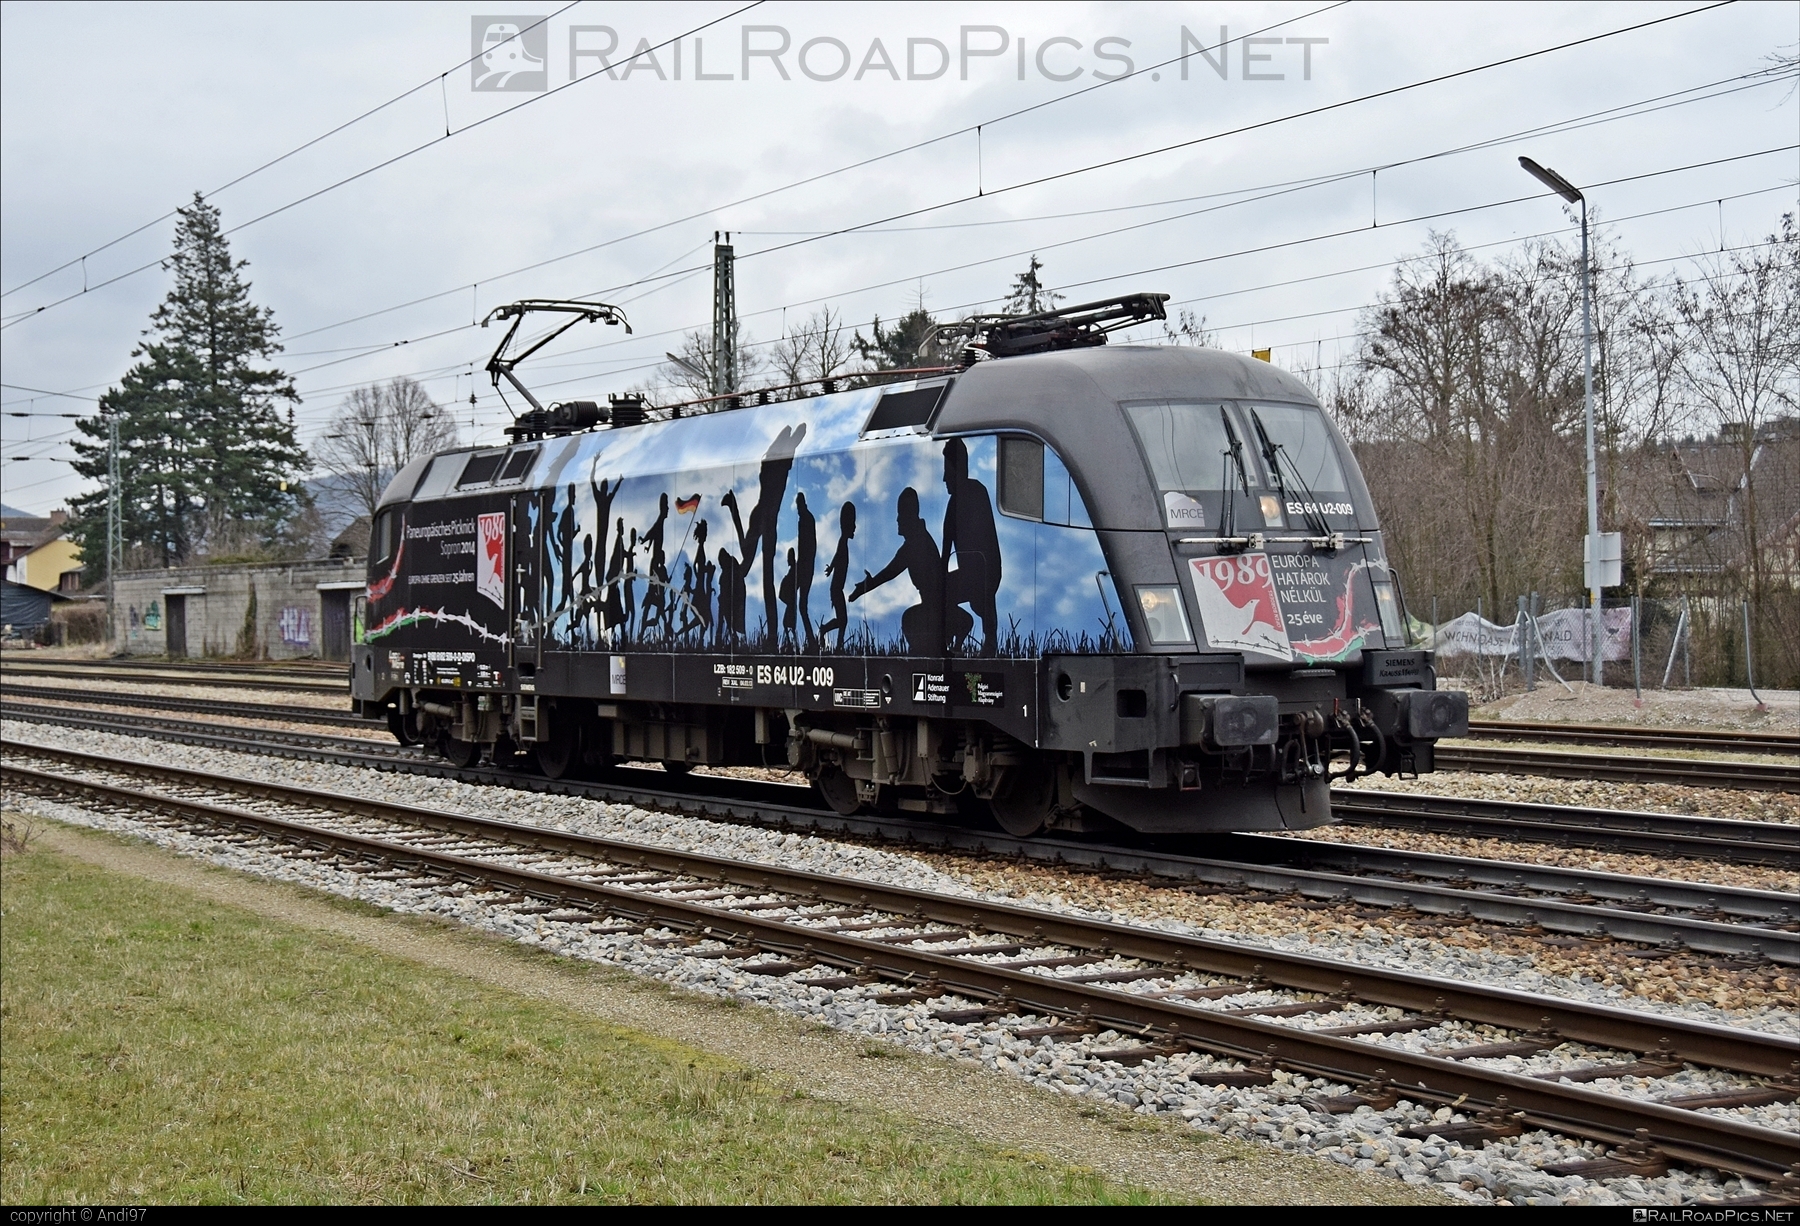 Siemens ES 64 U2 - 182 509-0 operated by Wiener Lokalbahnen Cargo GmbH #dispolok #es64 #es64u2 #eurosprinter #mitsuirailcapitaleurope #mitsuirailcapitaleuropegmbh #mrce #siemens #siemensEs64 #siemensEs64u2 #siemenstaurus #taurus #tauruslocomotive #wienerlokalbahnencargo #wienerlokalbahnencargogmbh #wlc